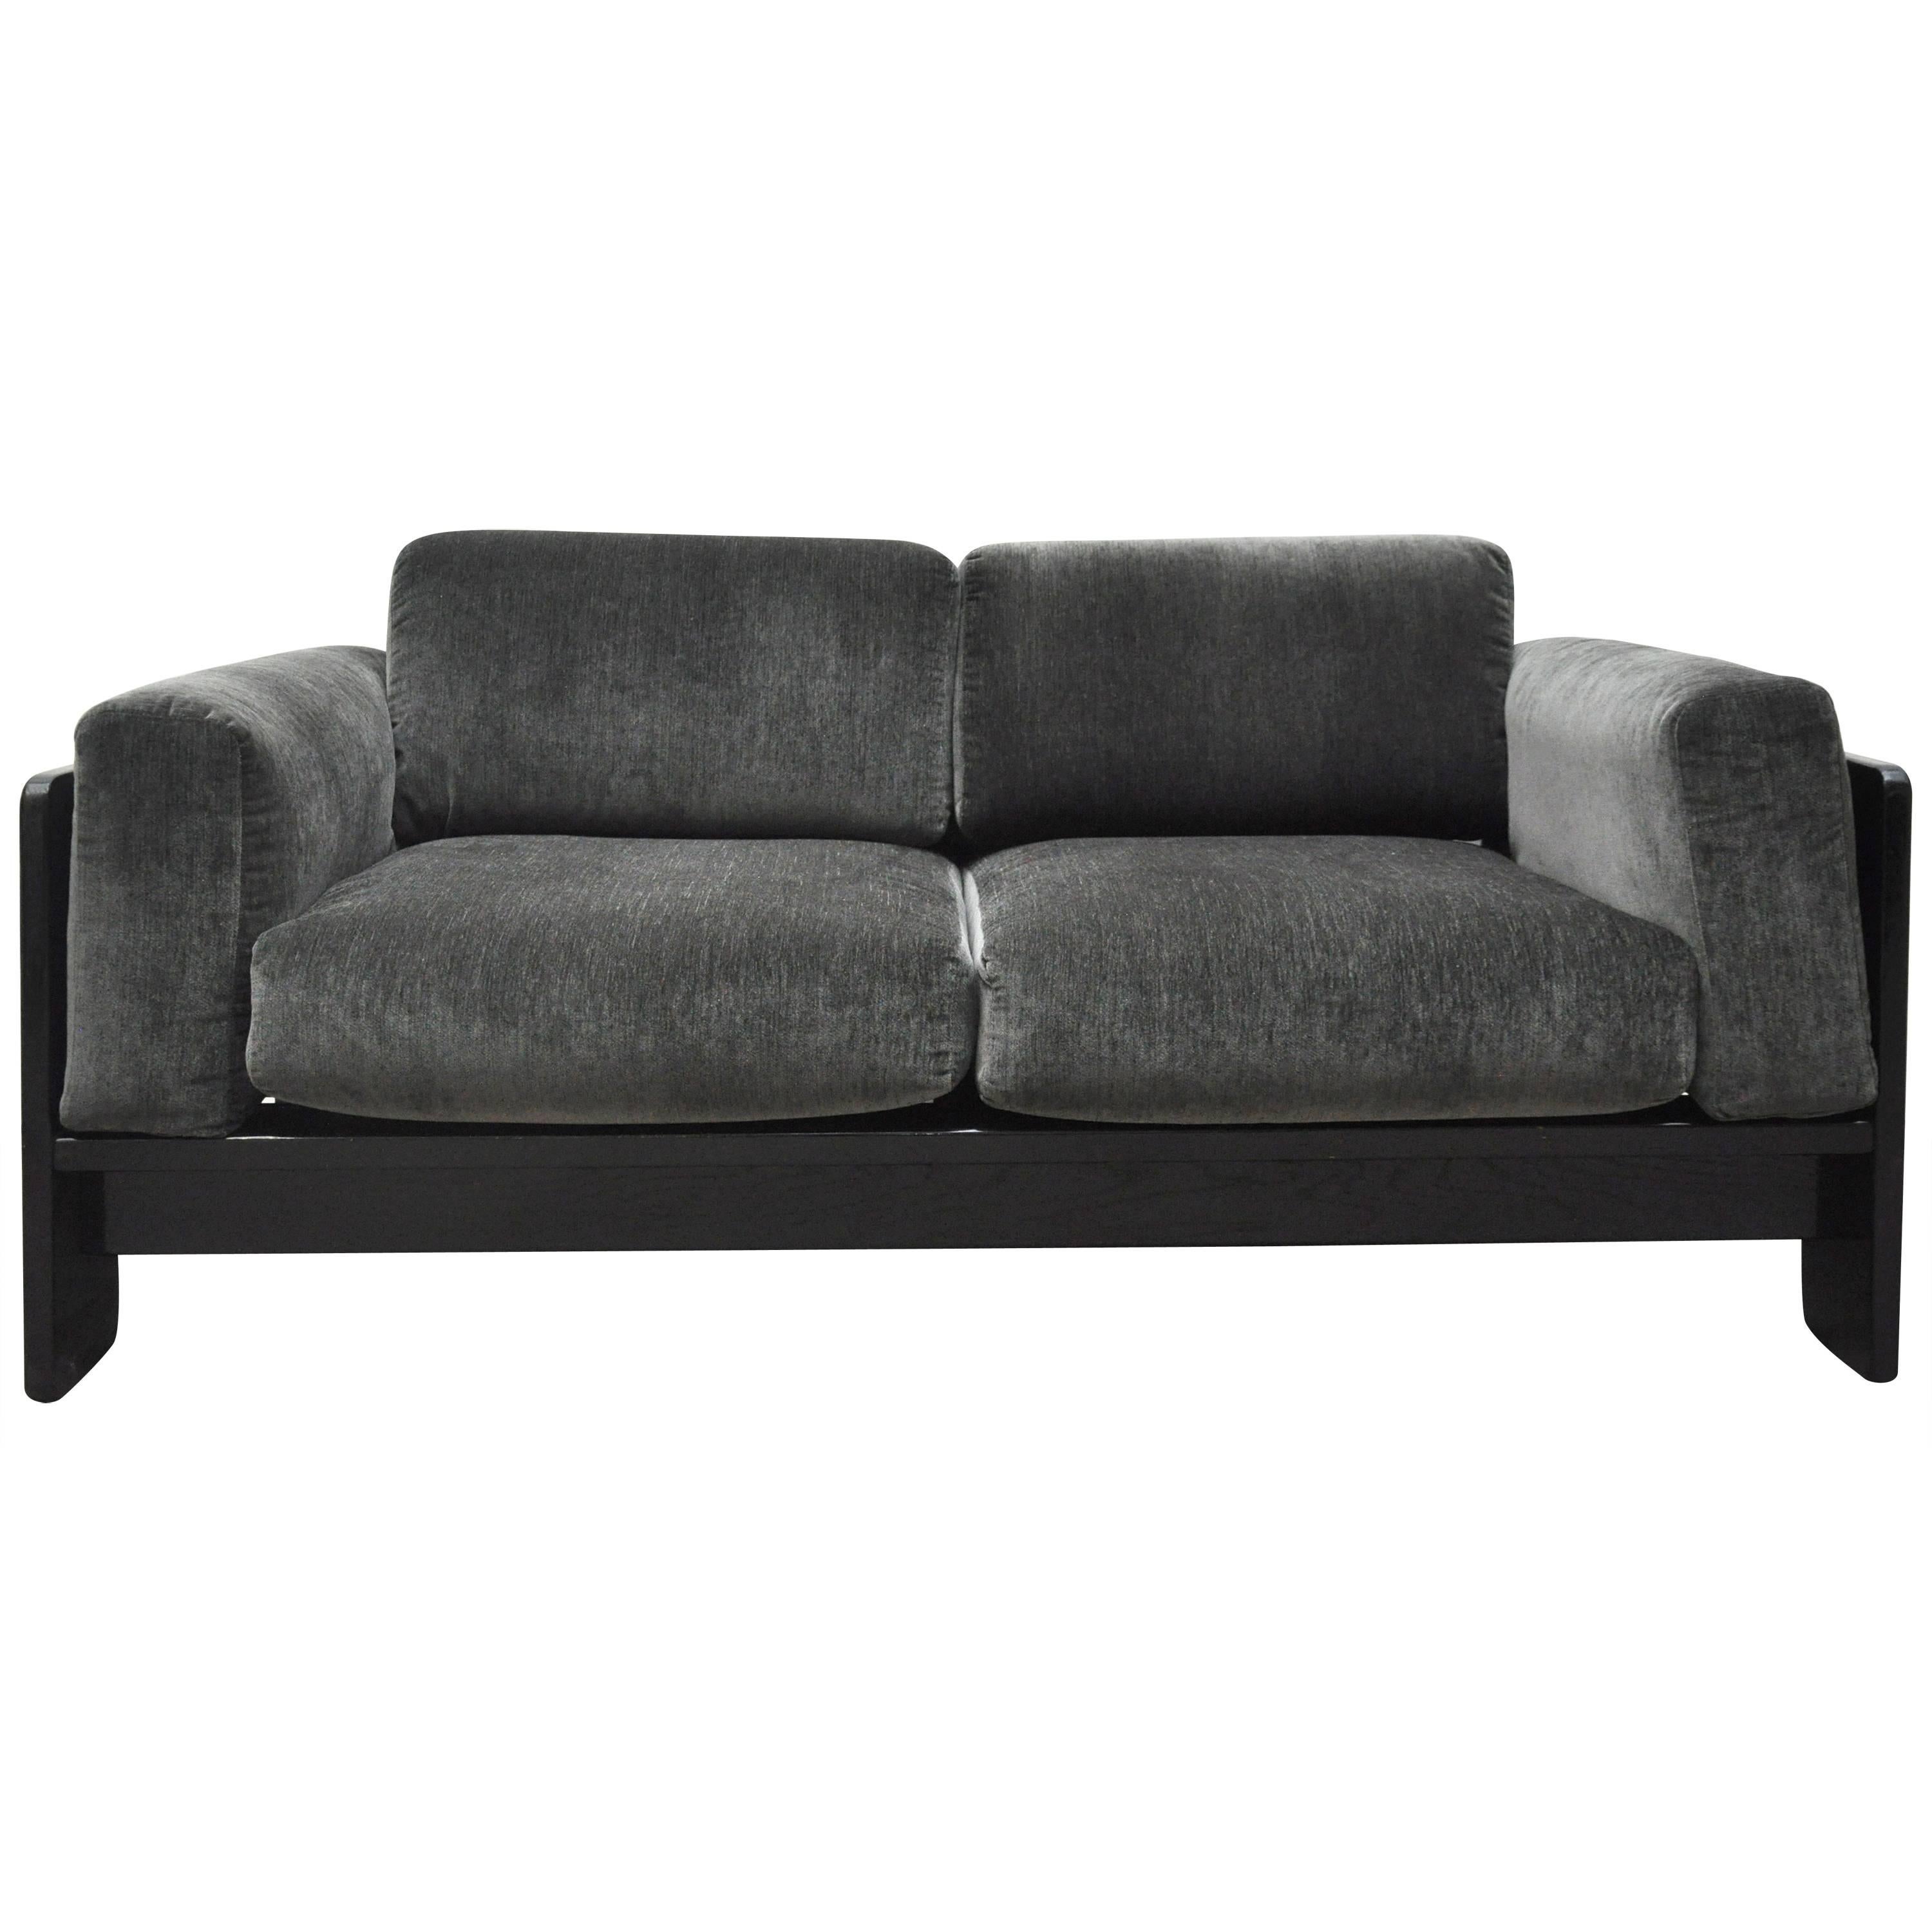 Bastiano Sofa by Tobia Scarpa, New Upholstery